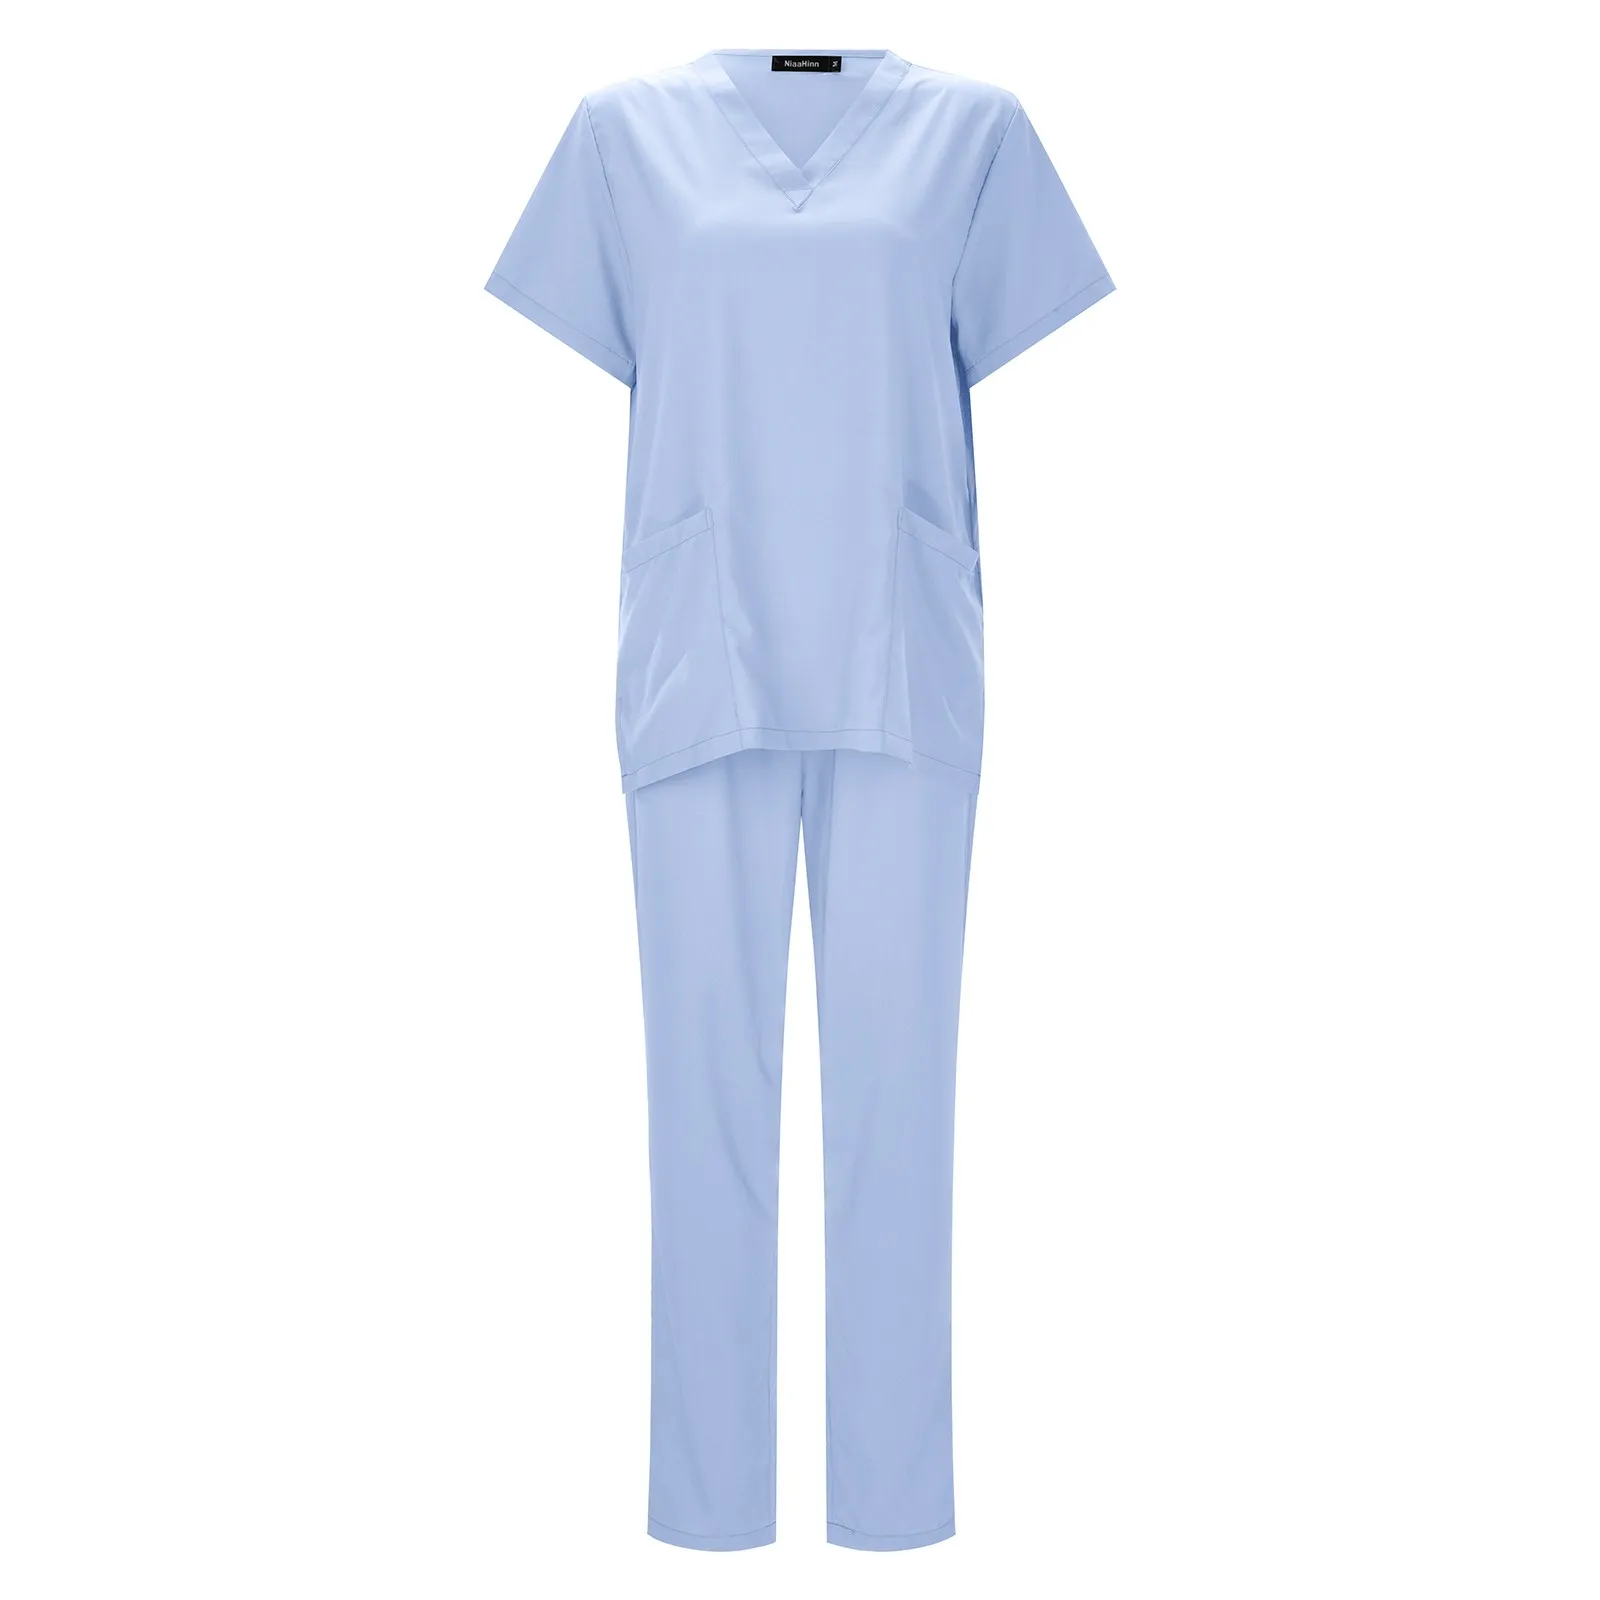 女性のための病院のコスチューム,医師と看護師のための制服アクセサリー,色とりどりのユニセックススーツ,卸売